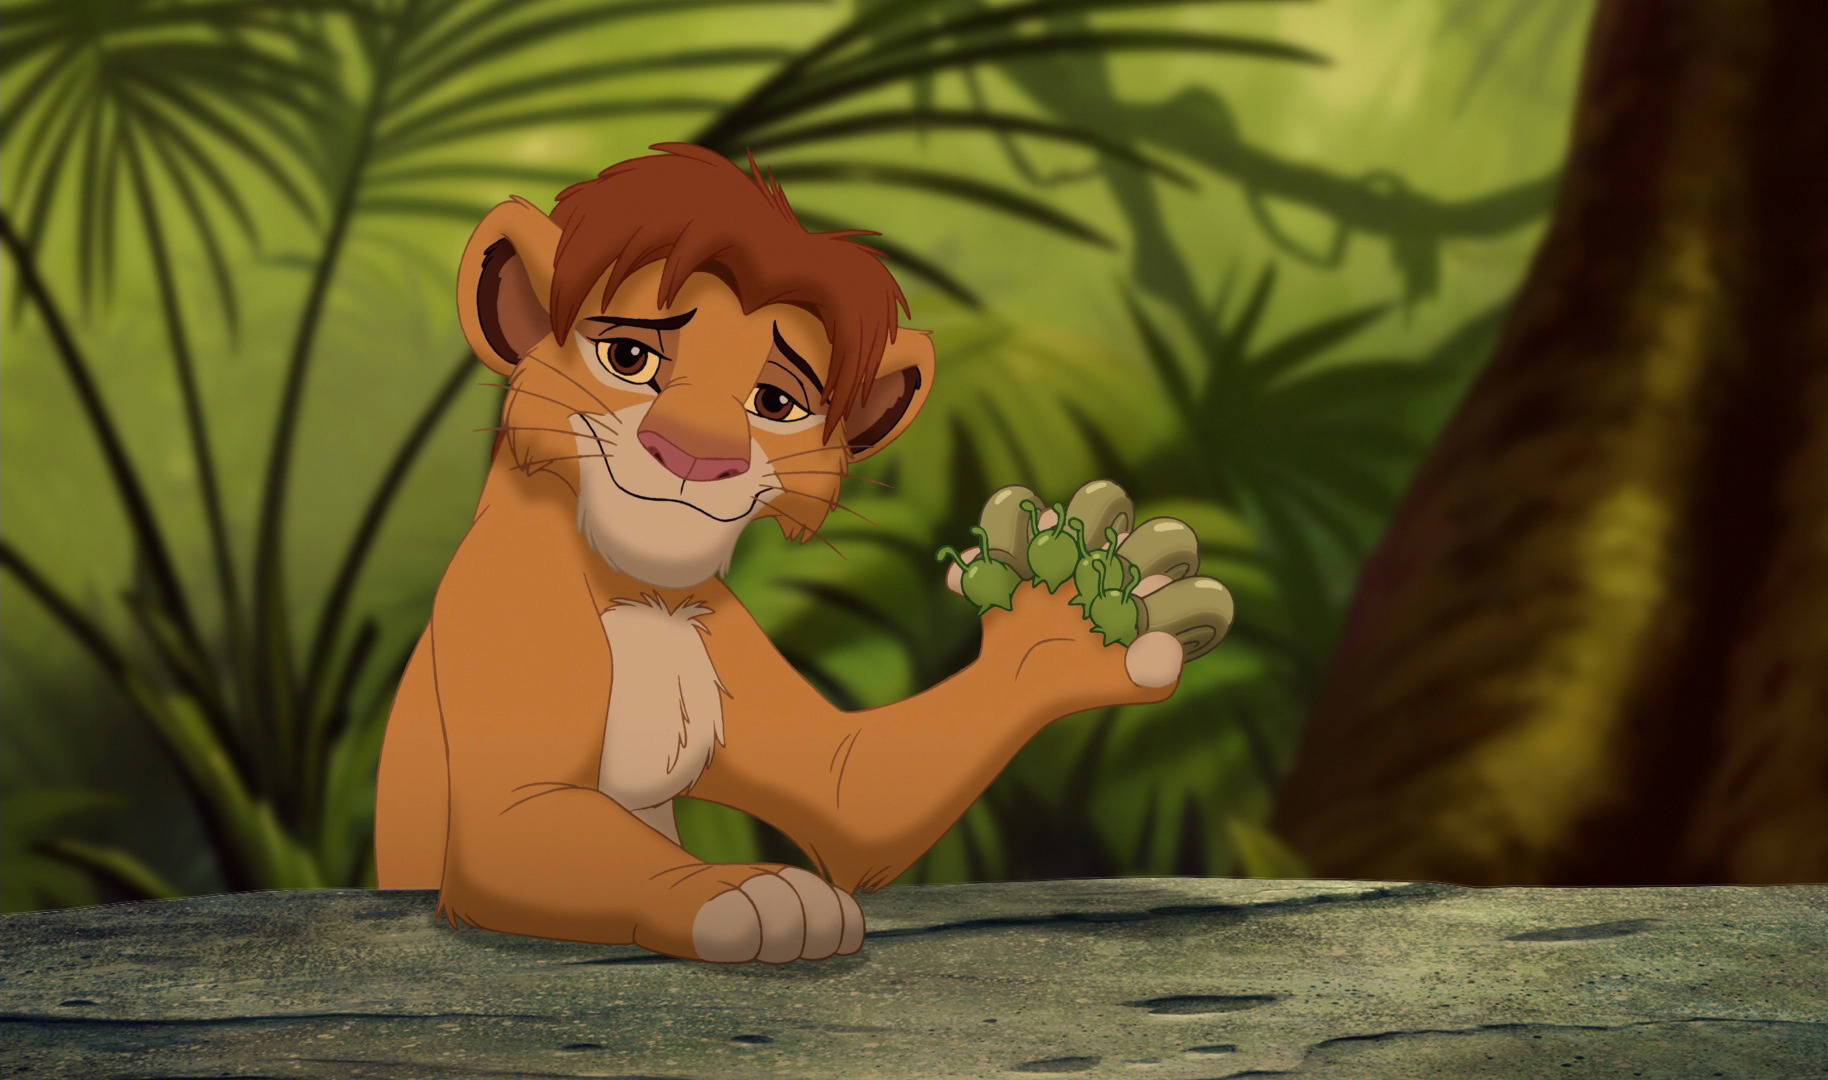 Disney Junior's The Lion King Proud Parents Simba Racer-Back Tank Top  Medium 